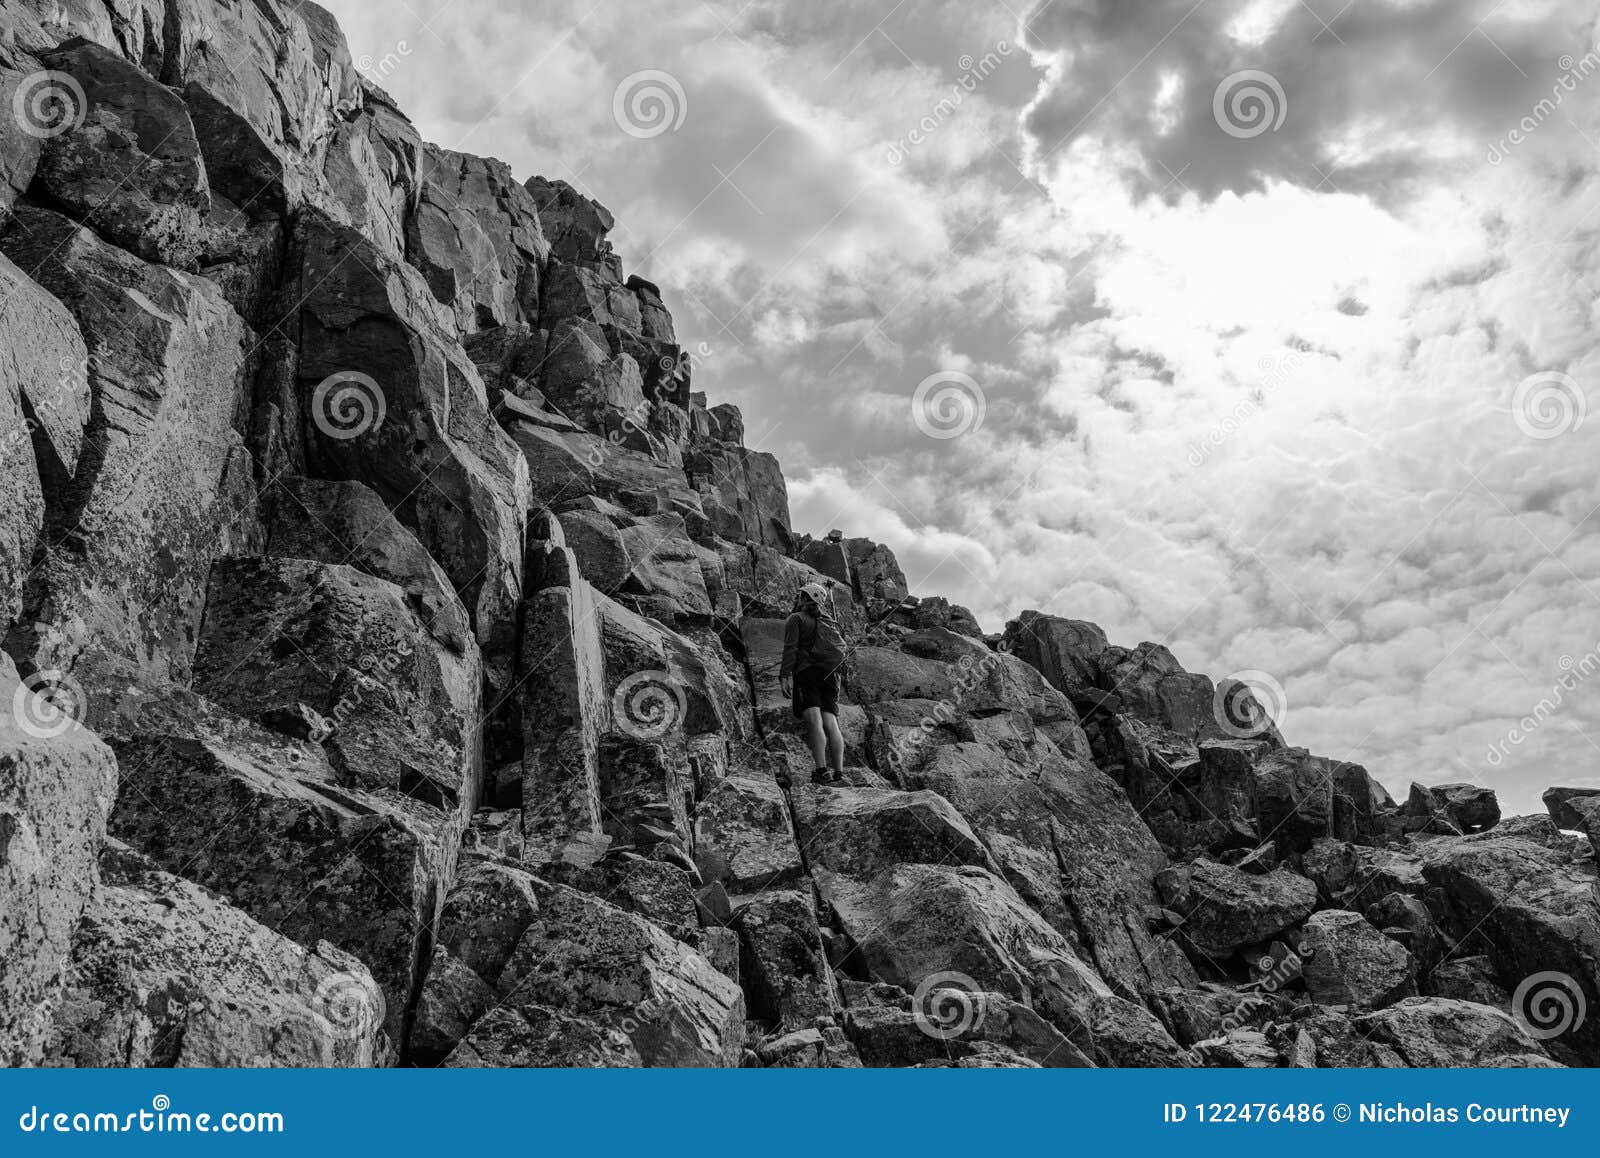 the wilson traverse. san juan range, colorado rocky mountains